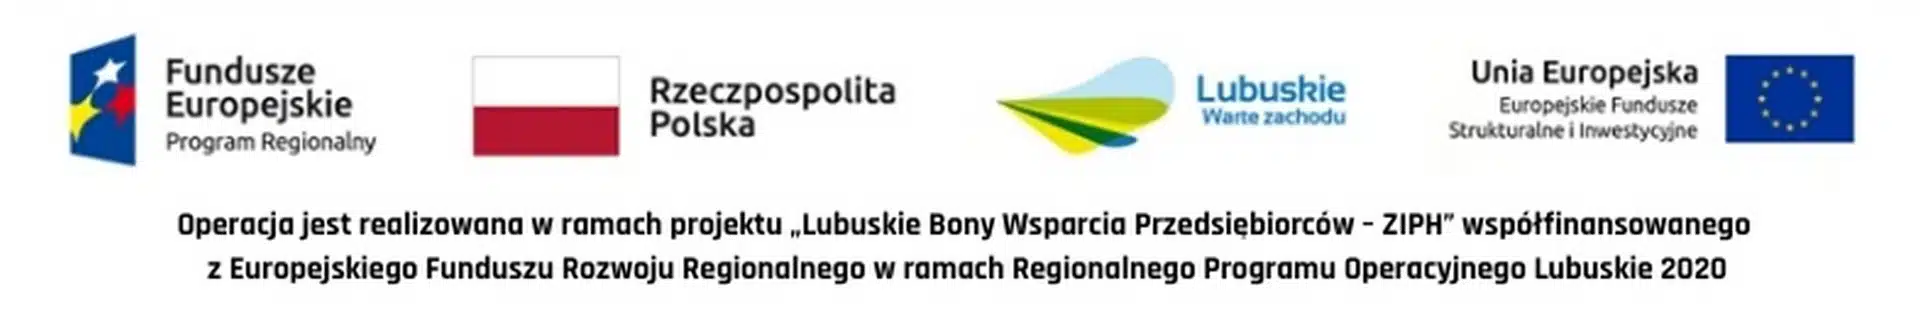 Logotypy instytucji wspierających projekt Luzbuskie 2020.